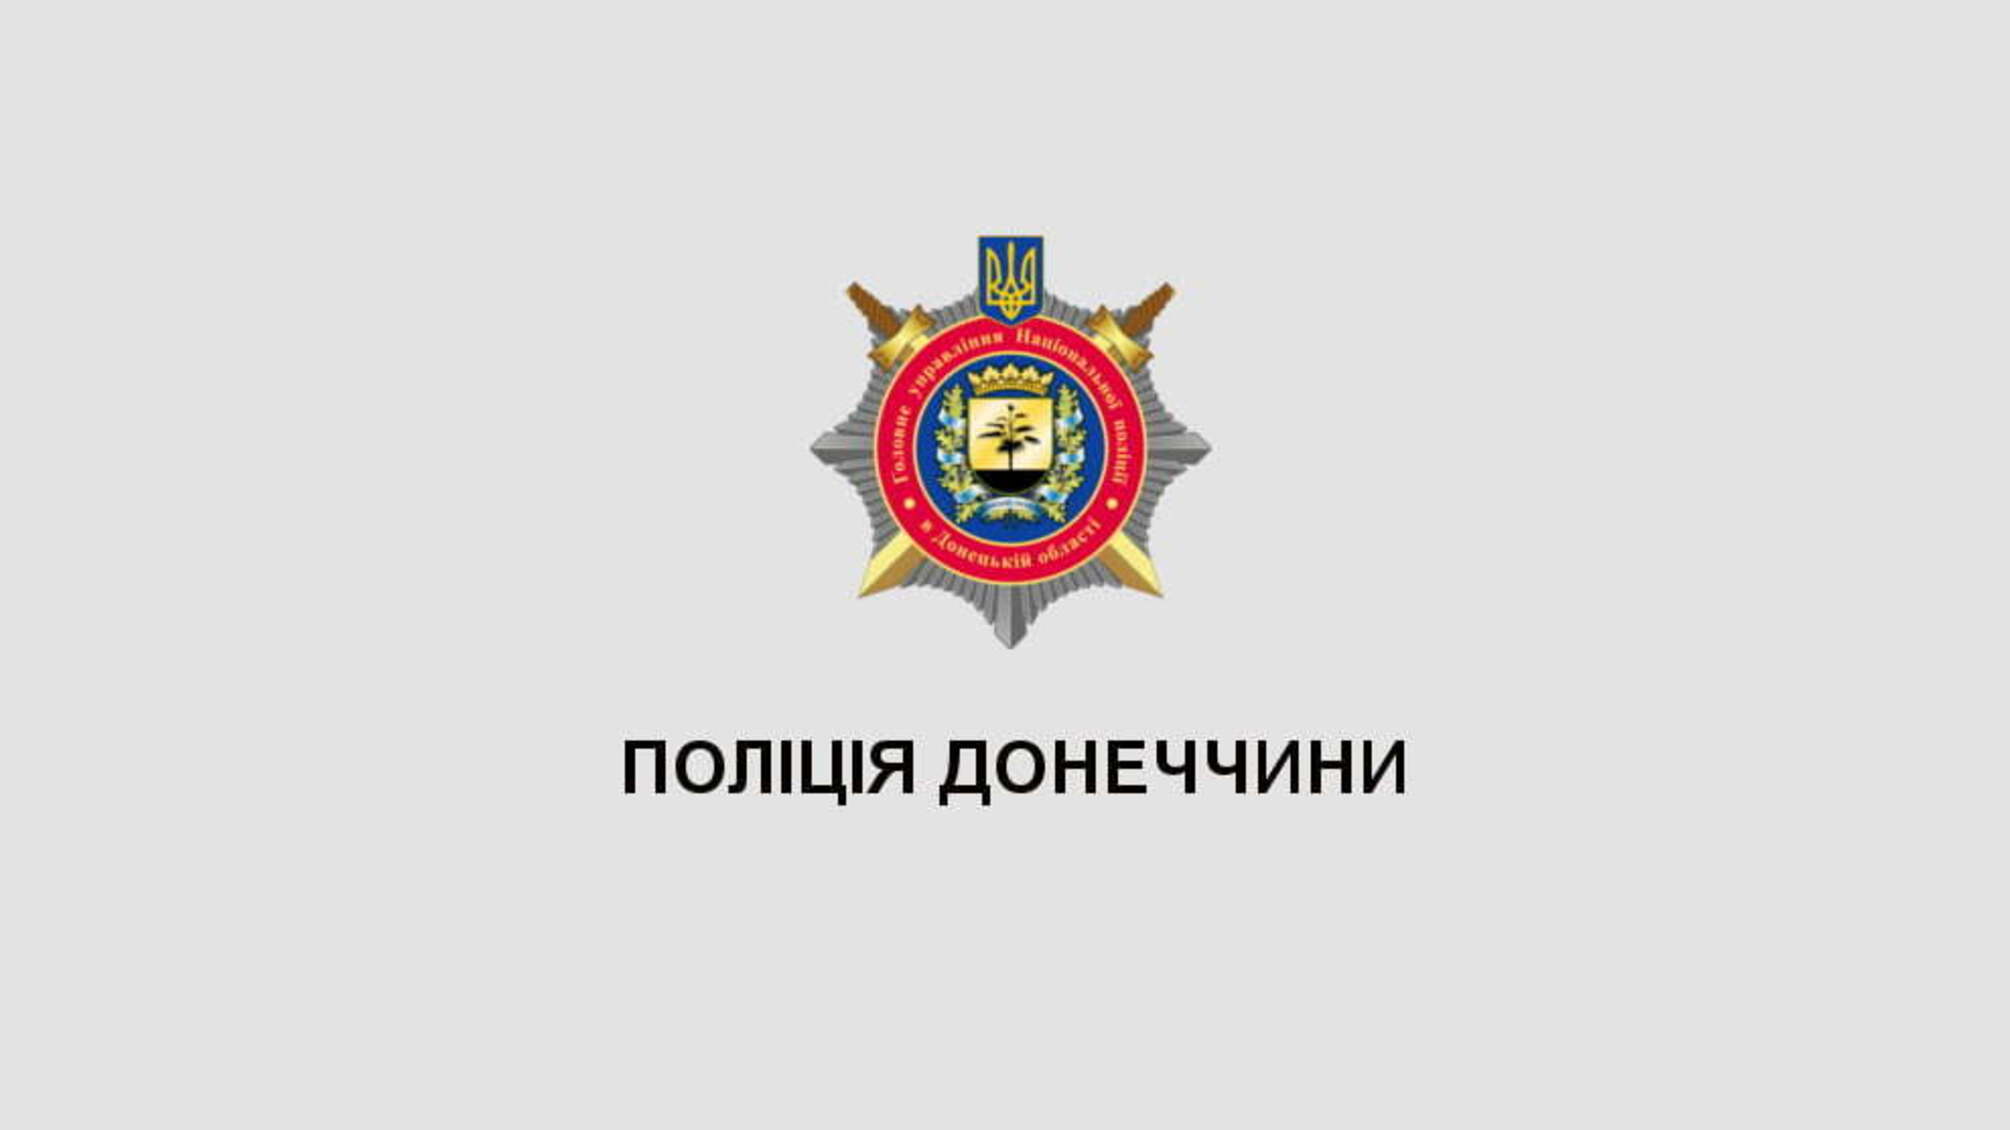 Кожне восьме порушення, яке виявили поліцейські на блокпостах Донеччини, - перевезення наркотиків